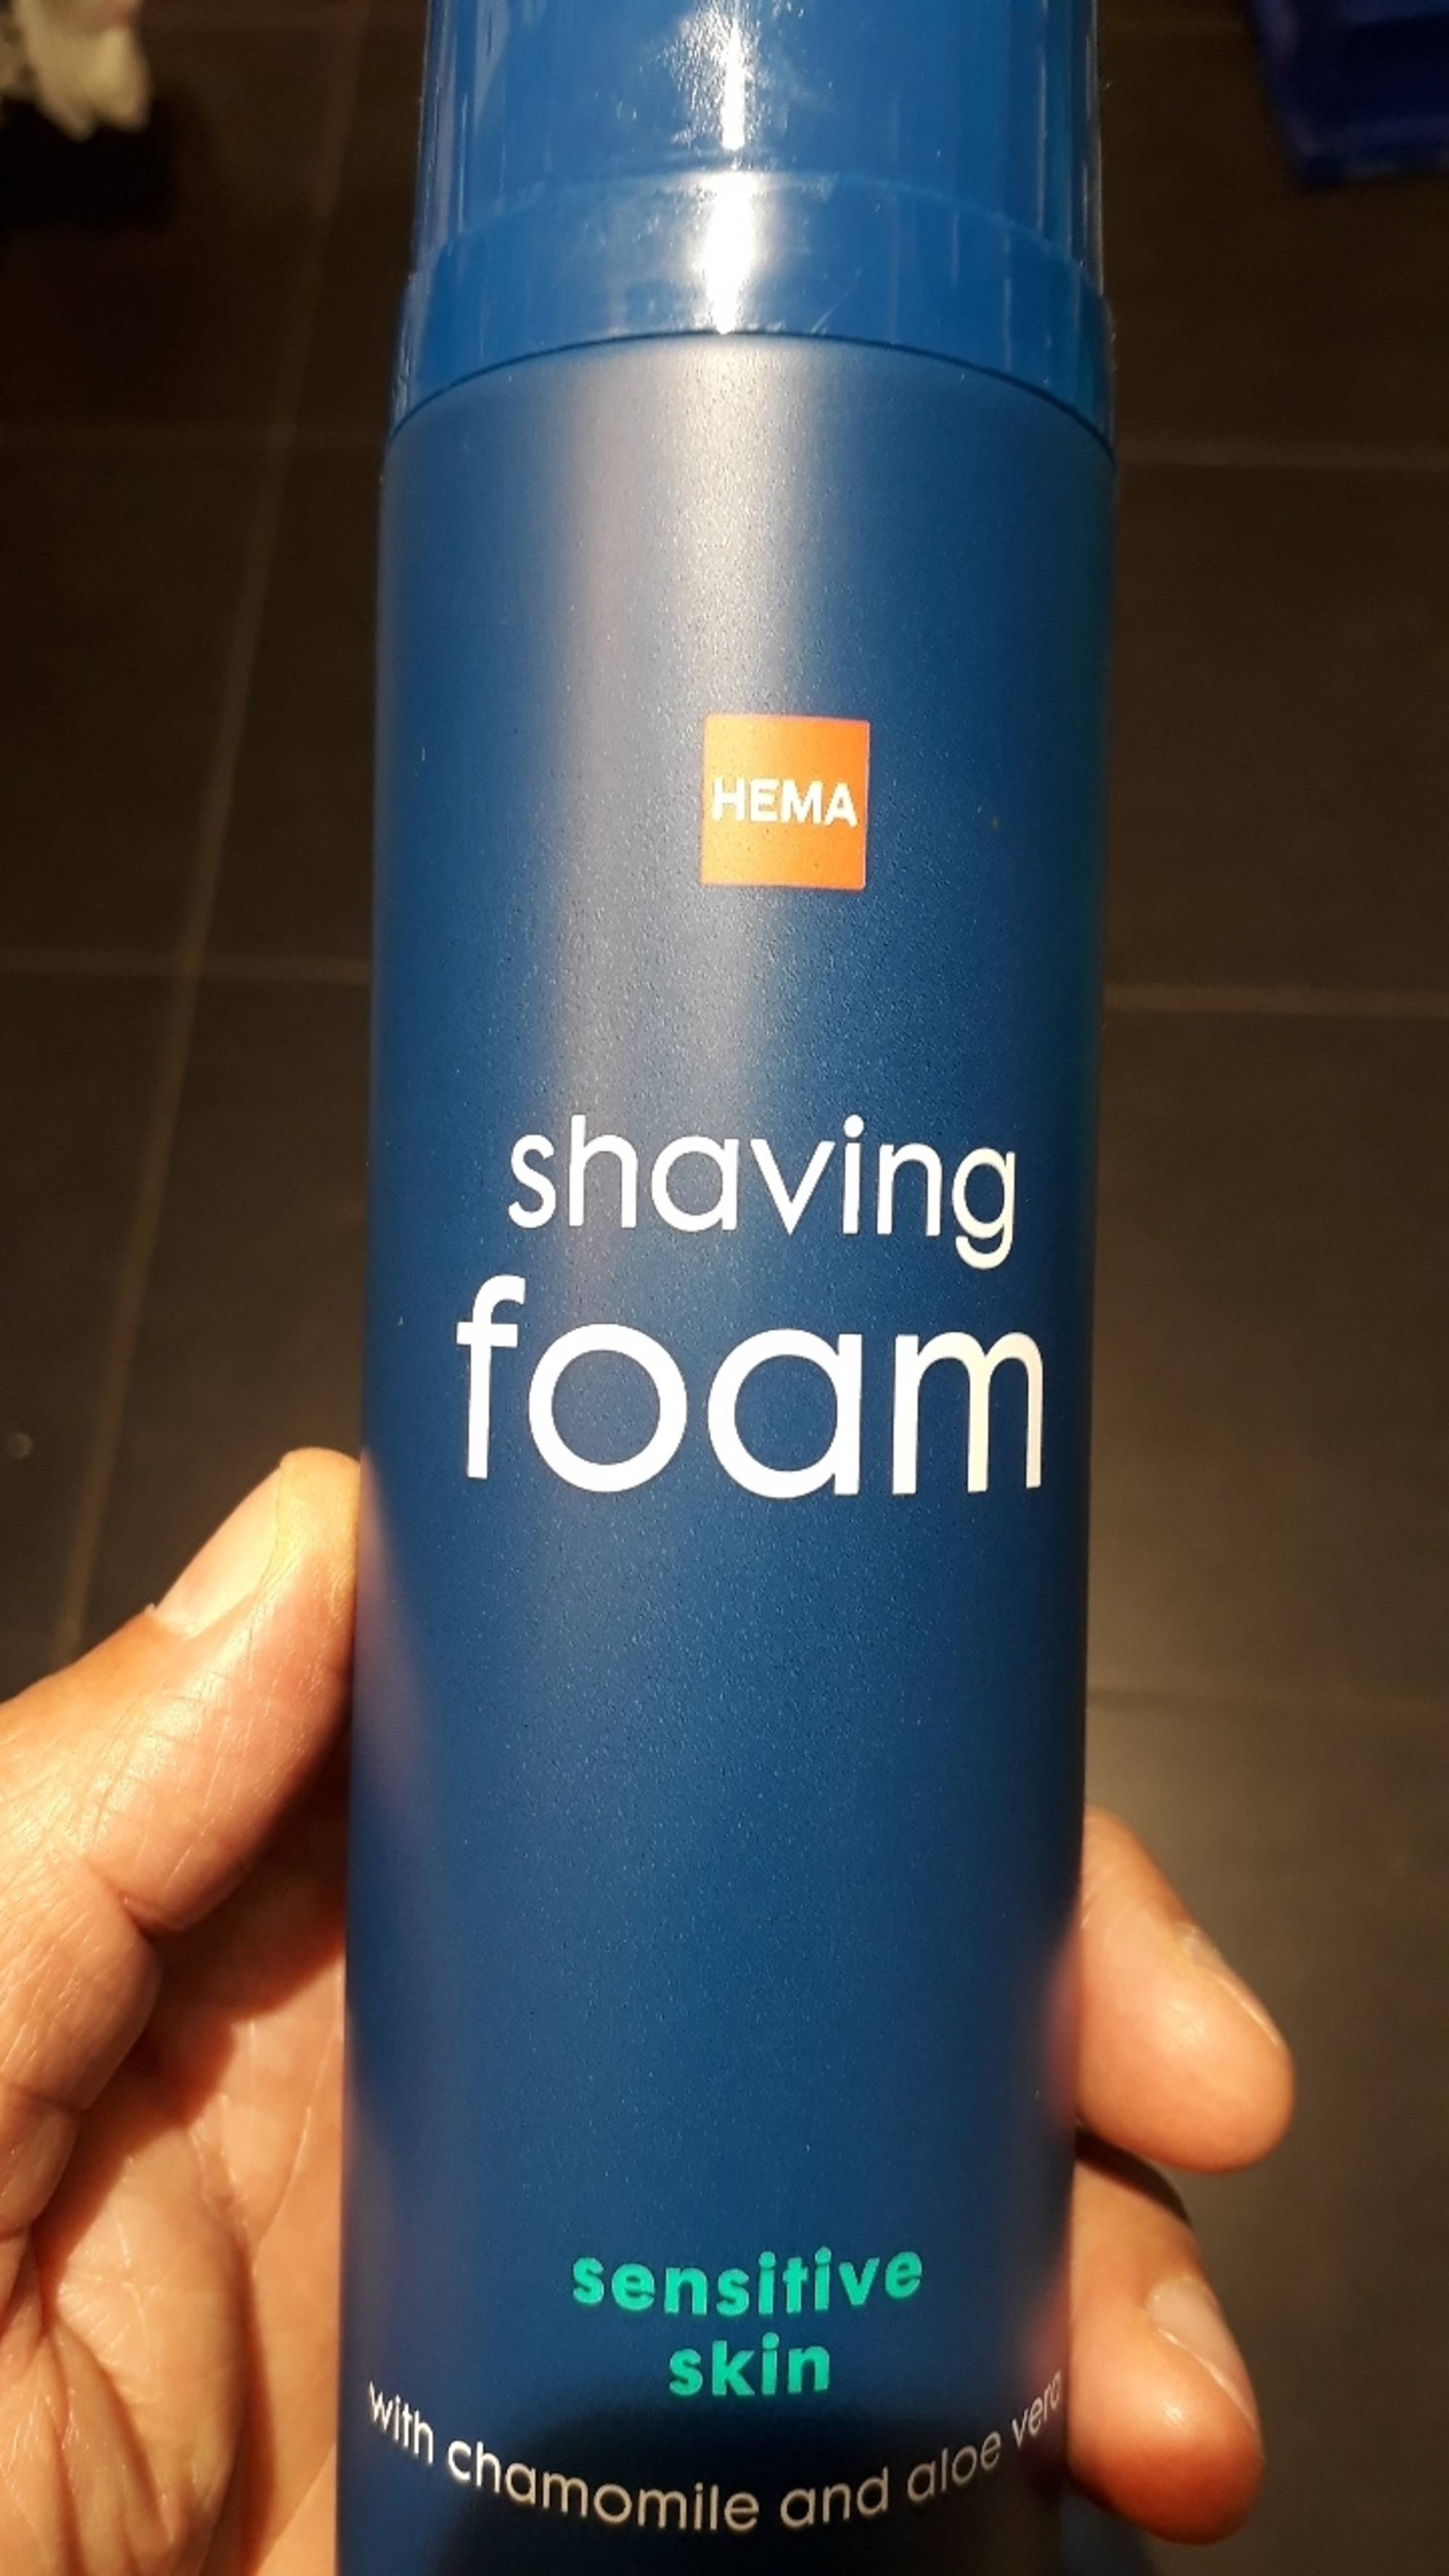 HEMA - Shaving foam with chamomile and aloe vera